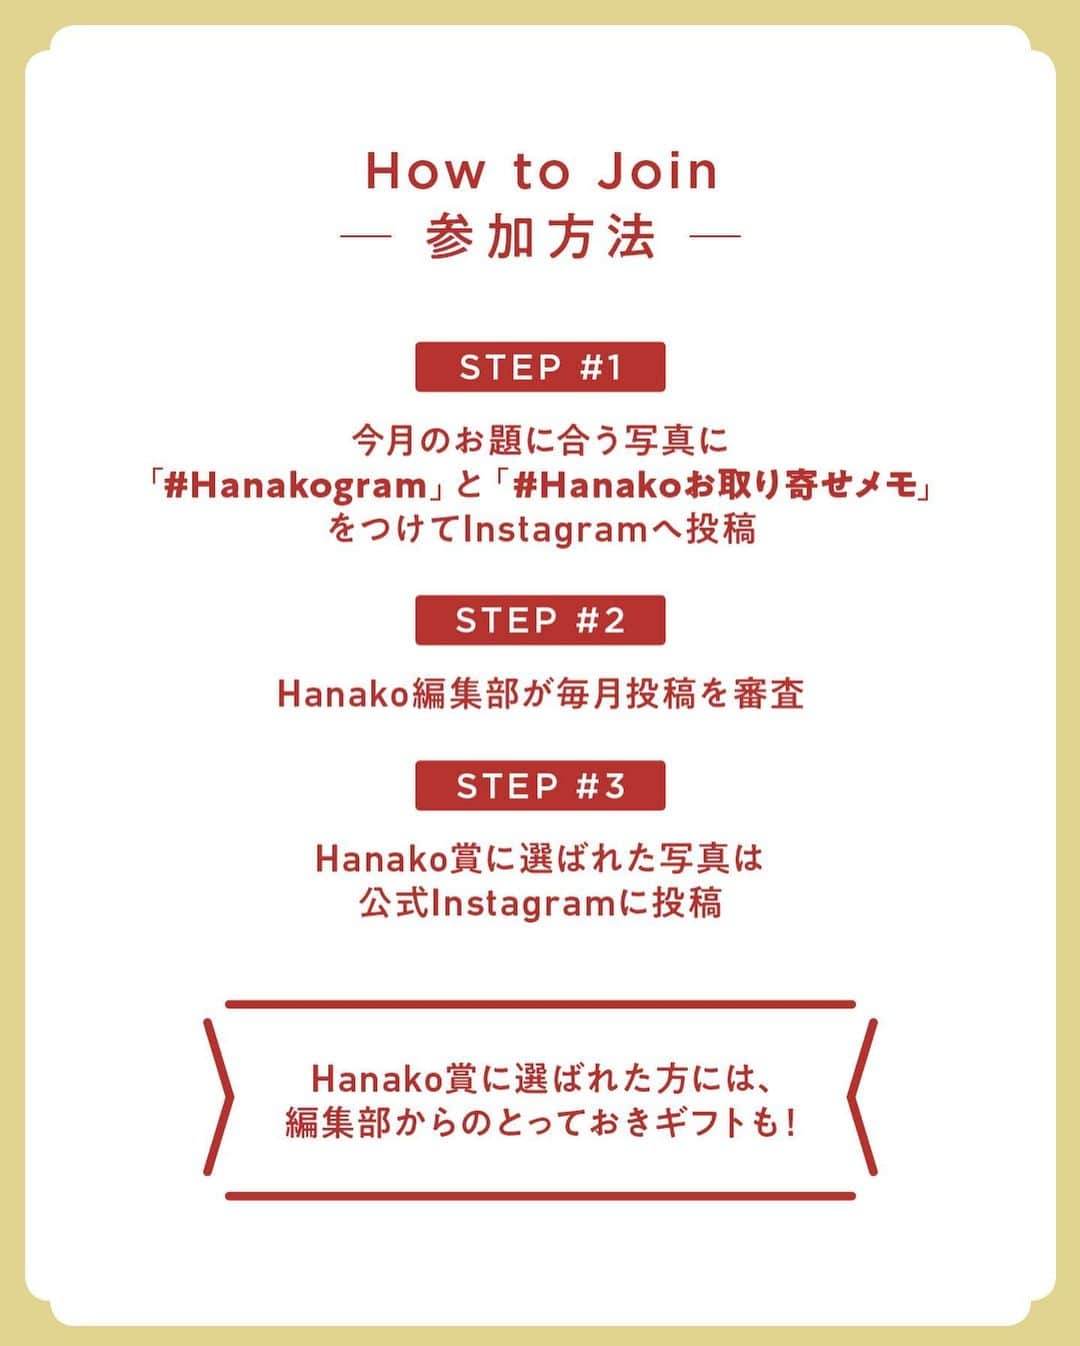 Hanako公式さんのインスタグラム写真 - (Hanako公式Instagram)「#2 Hanakoお取り寄せ図鑑🍞﻿ フードディレクター・野村友里さんがHanakoで連載中の『Good Neighbors,Good Suppliers』。 約6年の連載の中で出会ったお取り寄せ食材をご紹介します。﻿ ﻿ ﻿ 1.〈菊水食品〉の「いばらき 農家の納豆」﻿ 2019年1月に誕生した「いばらき 農家の納豆」は、異なる生産者による大豆で仕立てた納豆が6つセットに。納豆職人がそれぞれの特性を生かして作った品々は、色味や食感、風味も個性的。じっくりと噛み締めて味わいたい🍚﻿ ﻿ 2.〈ヴィナイオータ〉の「カッペロ イブレオ」﻿ 作り手の思いや理念まで輸入することを目指し、小規模な生産者からワインや加工品を仕入れるインポーター。ワイン農家でもあるアリアンナ・オッキピンティ氏のケッパーは、野性味があります🍷﻿ ﻿ 3.〈タロー屋〉の「季節の酵母パンおまかせ便」﻿ 四季折々の果物や花による、自家製酵母を使ったパン屋さん。八重桜酵母のコンプレやイチゴ酵母の食パンなど、袋を開けるたびに漂うユニークな香りに驚き。噛むほどに国産小麦の風味と重なっていく。ほかカンパーニュなど計5～6種入り🥖﻿ ﻿ 4.〈おつな〉の「マグロのオイル漬け（プレーン）」﻿ 小料理店を営んできた店主が、残ったマグロで作ったことがきっかけで生まれた商品。国内で水揚げされたビンチョウマグロをコンベクションオーブンで低温殺菌し、海洋深層水や利尻昆布、ローリエなどで味付け。驚くほど風味豊か🐟﻿ ﻿ 5.〈パスティフィーチョ・ヴィチドーミニ〉の「パスタ」﻿ 南イタリア産のロングパスタ。1812年の創業以来守り続ける伝統製法で5日間かけて乾燥させたパスタは、コクがあってモチモチとした食感🍝﻿ ﻿ 6.〈あたらしい日常料理ふじわら〉の「おいしいびん詰め」﻿ JR東小金井駅近くの食堂〈あたらしい日常料理ふじわら〉店主・藤原奈緒さん考案の調味料。複雑に組み合わせた奥深い味で、どんな料理も底上げしてくれます🍋﻿ ﻿ 7.〈秋山商店〉の「削り節」﻿ 日本で初めて鰹の削り節を販売したお店。鰹やむろあじ、鯖の旨味があふれる味噌汁向けの「混合削り（3番）」（右）や、繊細で香りのいい「まぐろ削り（9番）」（左）など種類も豊富。開封後は10度以下での保存が◎﻿ ﻿ ﻿ 8.〈仙人スパイス〉の「純胡椒」﻿ 「胡椒は食材なのだと見直した」と、野村友里さんを唸らせた逸品。インドネシアのカリマンタン島で収穫された緑の胡椒を新鮮な当日中に塩水漬け。オーナー・高橋仙人さんが現地へ赴き生産。香り高い状態で届きます🌿﻿ ﻿ ﻿ 9.〈CHEESE STAND〉の「フレッシュチーズ」﻿ 多摩の牧場から届く牛乳を使い、渋谷の工房で作るフレッシュチーズ。北海道、九州、離島を除く全国に、翌日には出来たてのチーズが届けられます🧀﻿ ﻿ 10. HAPPY NUTS DAY〉の「ピーナッツバター（粒あり）」﻿ 九十九里生まれのブランド。千葉県産の落花生を職人の手で焙煎し、丁寧に作り上げています。濃厚な口当たりと、ザクザクとした食感が魅力。素材は落花生、海塩、てんさい糖のみなので、調味料としても活用できるのもうれしい🥜﻿ ﻿ 11.〈RYO'S FARM〉の「リリコイバター」﻿ リリコイとは、ハワイの言葉でパッションフルーツのこと。バター、卵、砂糖と一緒に煮込んだとろみのあるバタージャム。温暖な千葉・館山で育てられたパッションフルーツは甘味と酸味のバランスが抜群。ヨーグルトと混ぜても良し🧈﻿ ﻿ 12.〈寺田本家〉の「むすひ」﻿ 江戸時代初期から続く歴史ある酒蔵。原材料の米はすべて無農薬で、野村友里さんの海外の友人も注目するほど。“百薬の長”を目指して造られる自然酒のなかでも、微発泡の発芽玄米酒「むすひ」は乳酸菌や酵母の力を感じられる品🍶﻿ ﻿ 13.〈AMBESSA & CO〉の「チャイマサラ・ブレンド」﻿ ジンジャーやカルダモンなど7種のホールスパイスが入ったキット。このほかオーガニック食材を選んで販売するのは、南房総で自給自足する君島悠矢さん🐫﻿ ﻿ 14.〈あぶらや〉の「ヘーゼルナッツオイル」﻿ 鎌倉〈あぶらや〉の100%ピュアなヘーゼルナッツオイルは食べてよし、肌に塗ってもよし、と大活躍。トルコ産のオーガニックナッツの香りは素材そのもの。食用ならパンにつけたり、アイスクリームにかけたり🍨﻿ ﻿ _______________________________________﻿ ﻿ ＼ #Hanakogram 投稿募集中！／﻿ 📌参加方法はスワイプしてチェック！﻿ 期間は2020/7/10〜2020/8/9です。﻿ ﻿ _______________________________________﻿ ﻿ ﻿ 【Hanako1186号_2020年の今こそ取り寄せたいもの発売！】﻿ #Hanako #Hanako_magazine #stayhome #おうち時間 #おこもり #ポジティブおこもり #日々の暮らしを楽しむ #丁寧な暮らし #おうちカフェ #コーヒーのある暮らし #おやつの時間 #おうちごはん #部屋作り #シンプルな暮らし #お取り寄せ #お取り寄せグルメ #常備菜」7月23日 23時09分 - hanako_magazine